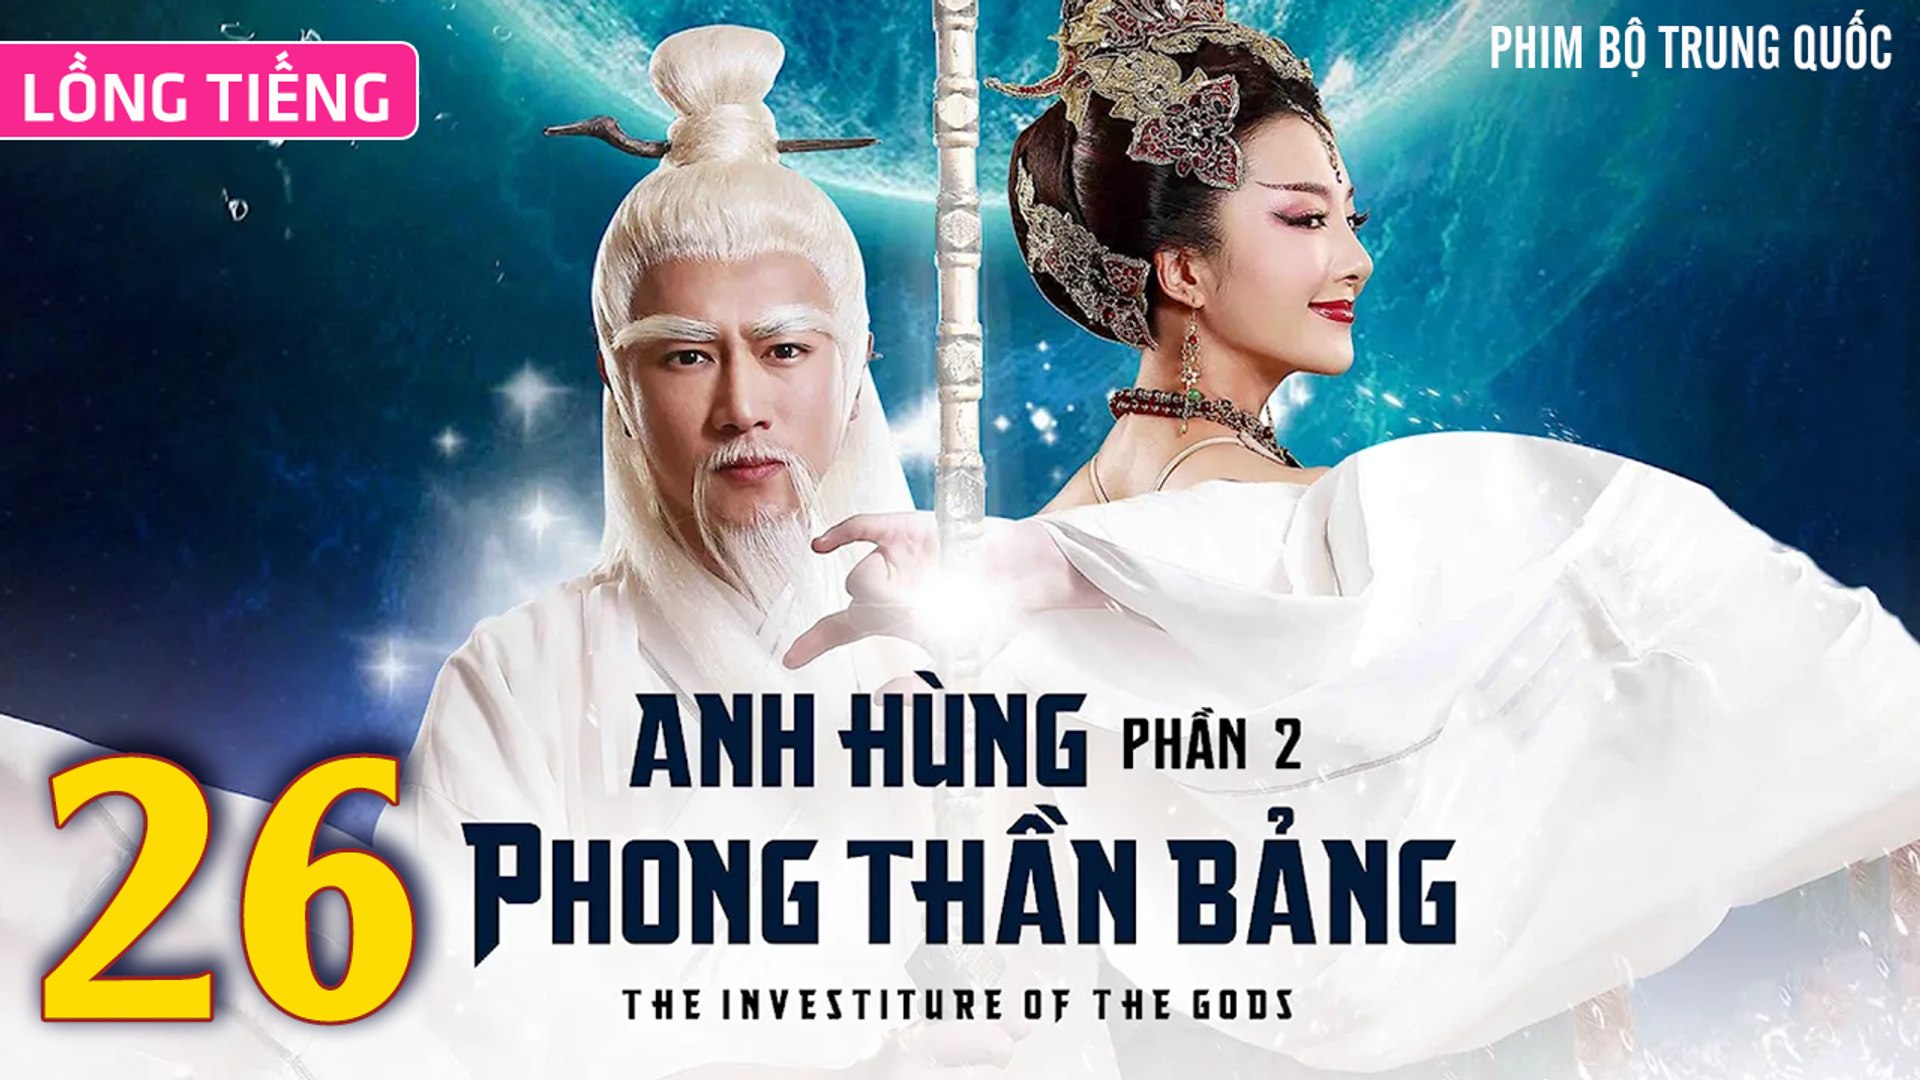 ⁣Phim Bộ Hay: ANH HÙNG PHONG THẦN BẢNG 2 - Tập 26 (Lồng Tiếng) | Phim Bộ Trung Quốc Hay Nhất 2023